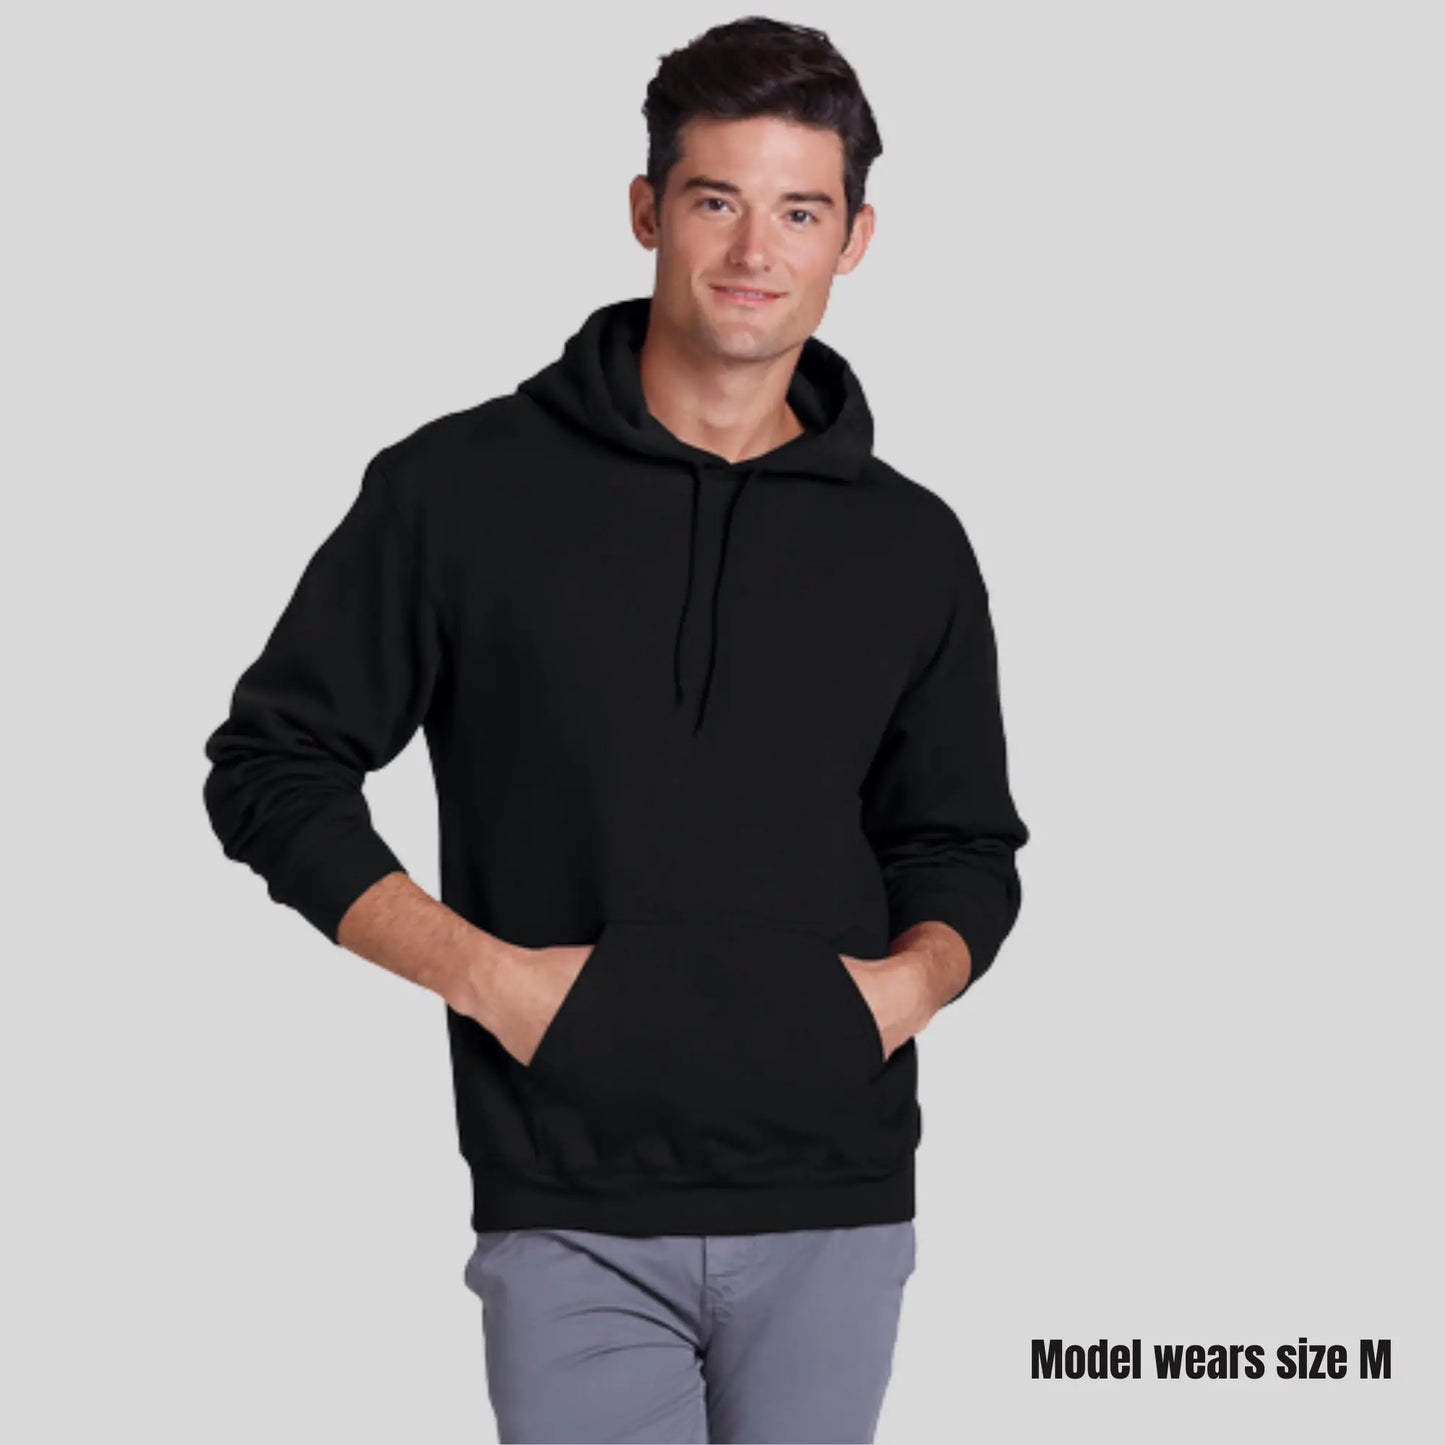 Personality Urban Hoodie -  Abstract Streetwear Sweatshirt